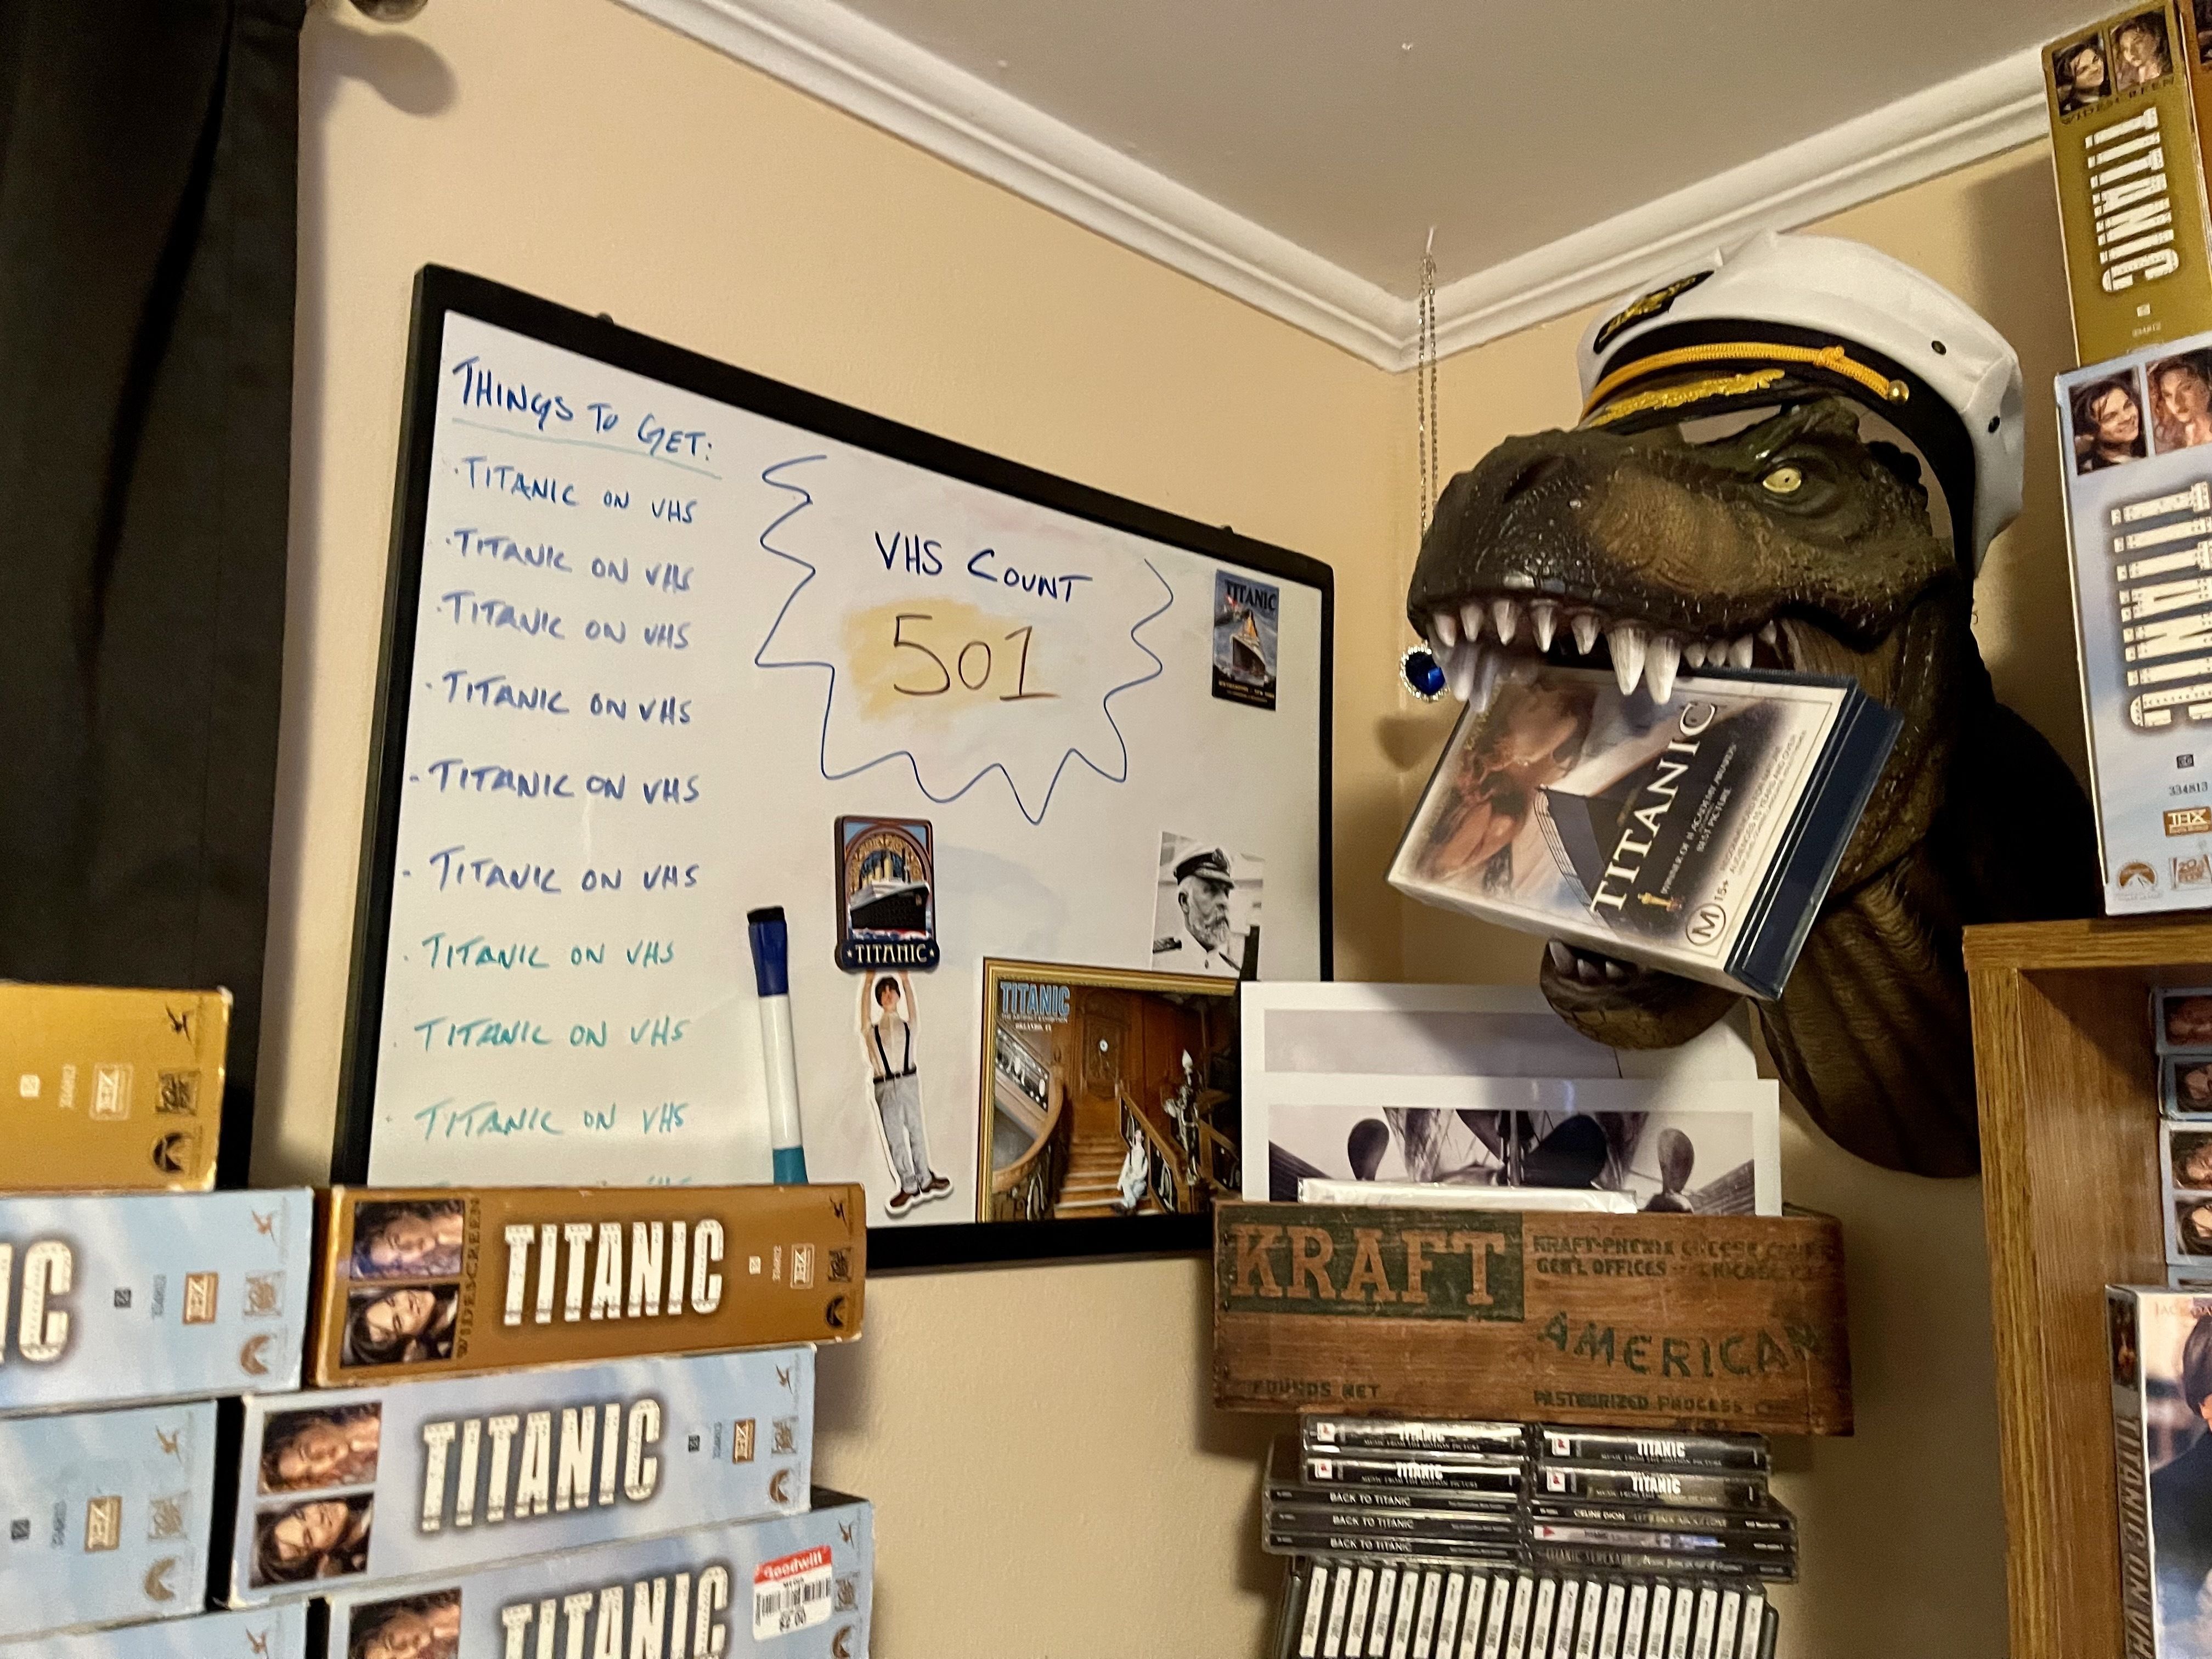 Een whiteboard-lezing "Dingen om te krijgen:" met "Titanic op VHS" negen keer op de lijst.  en een VHS-telling van 501